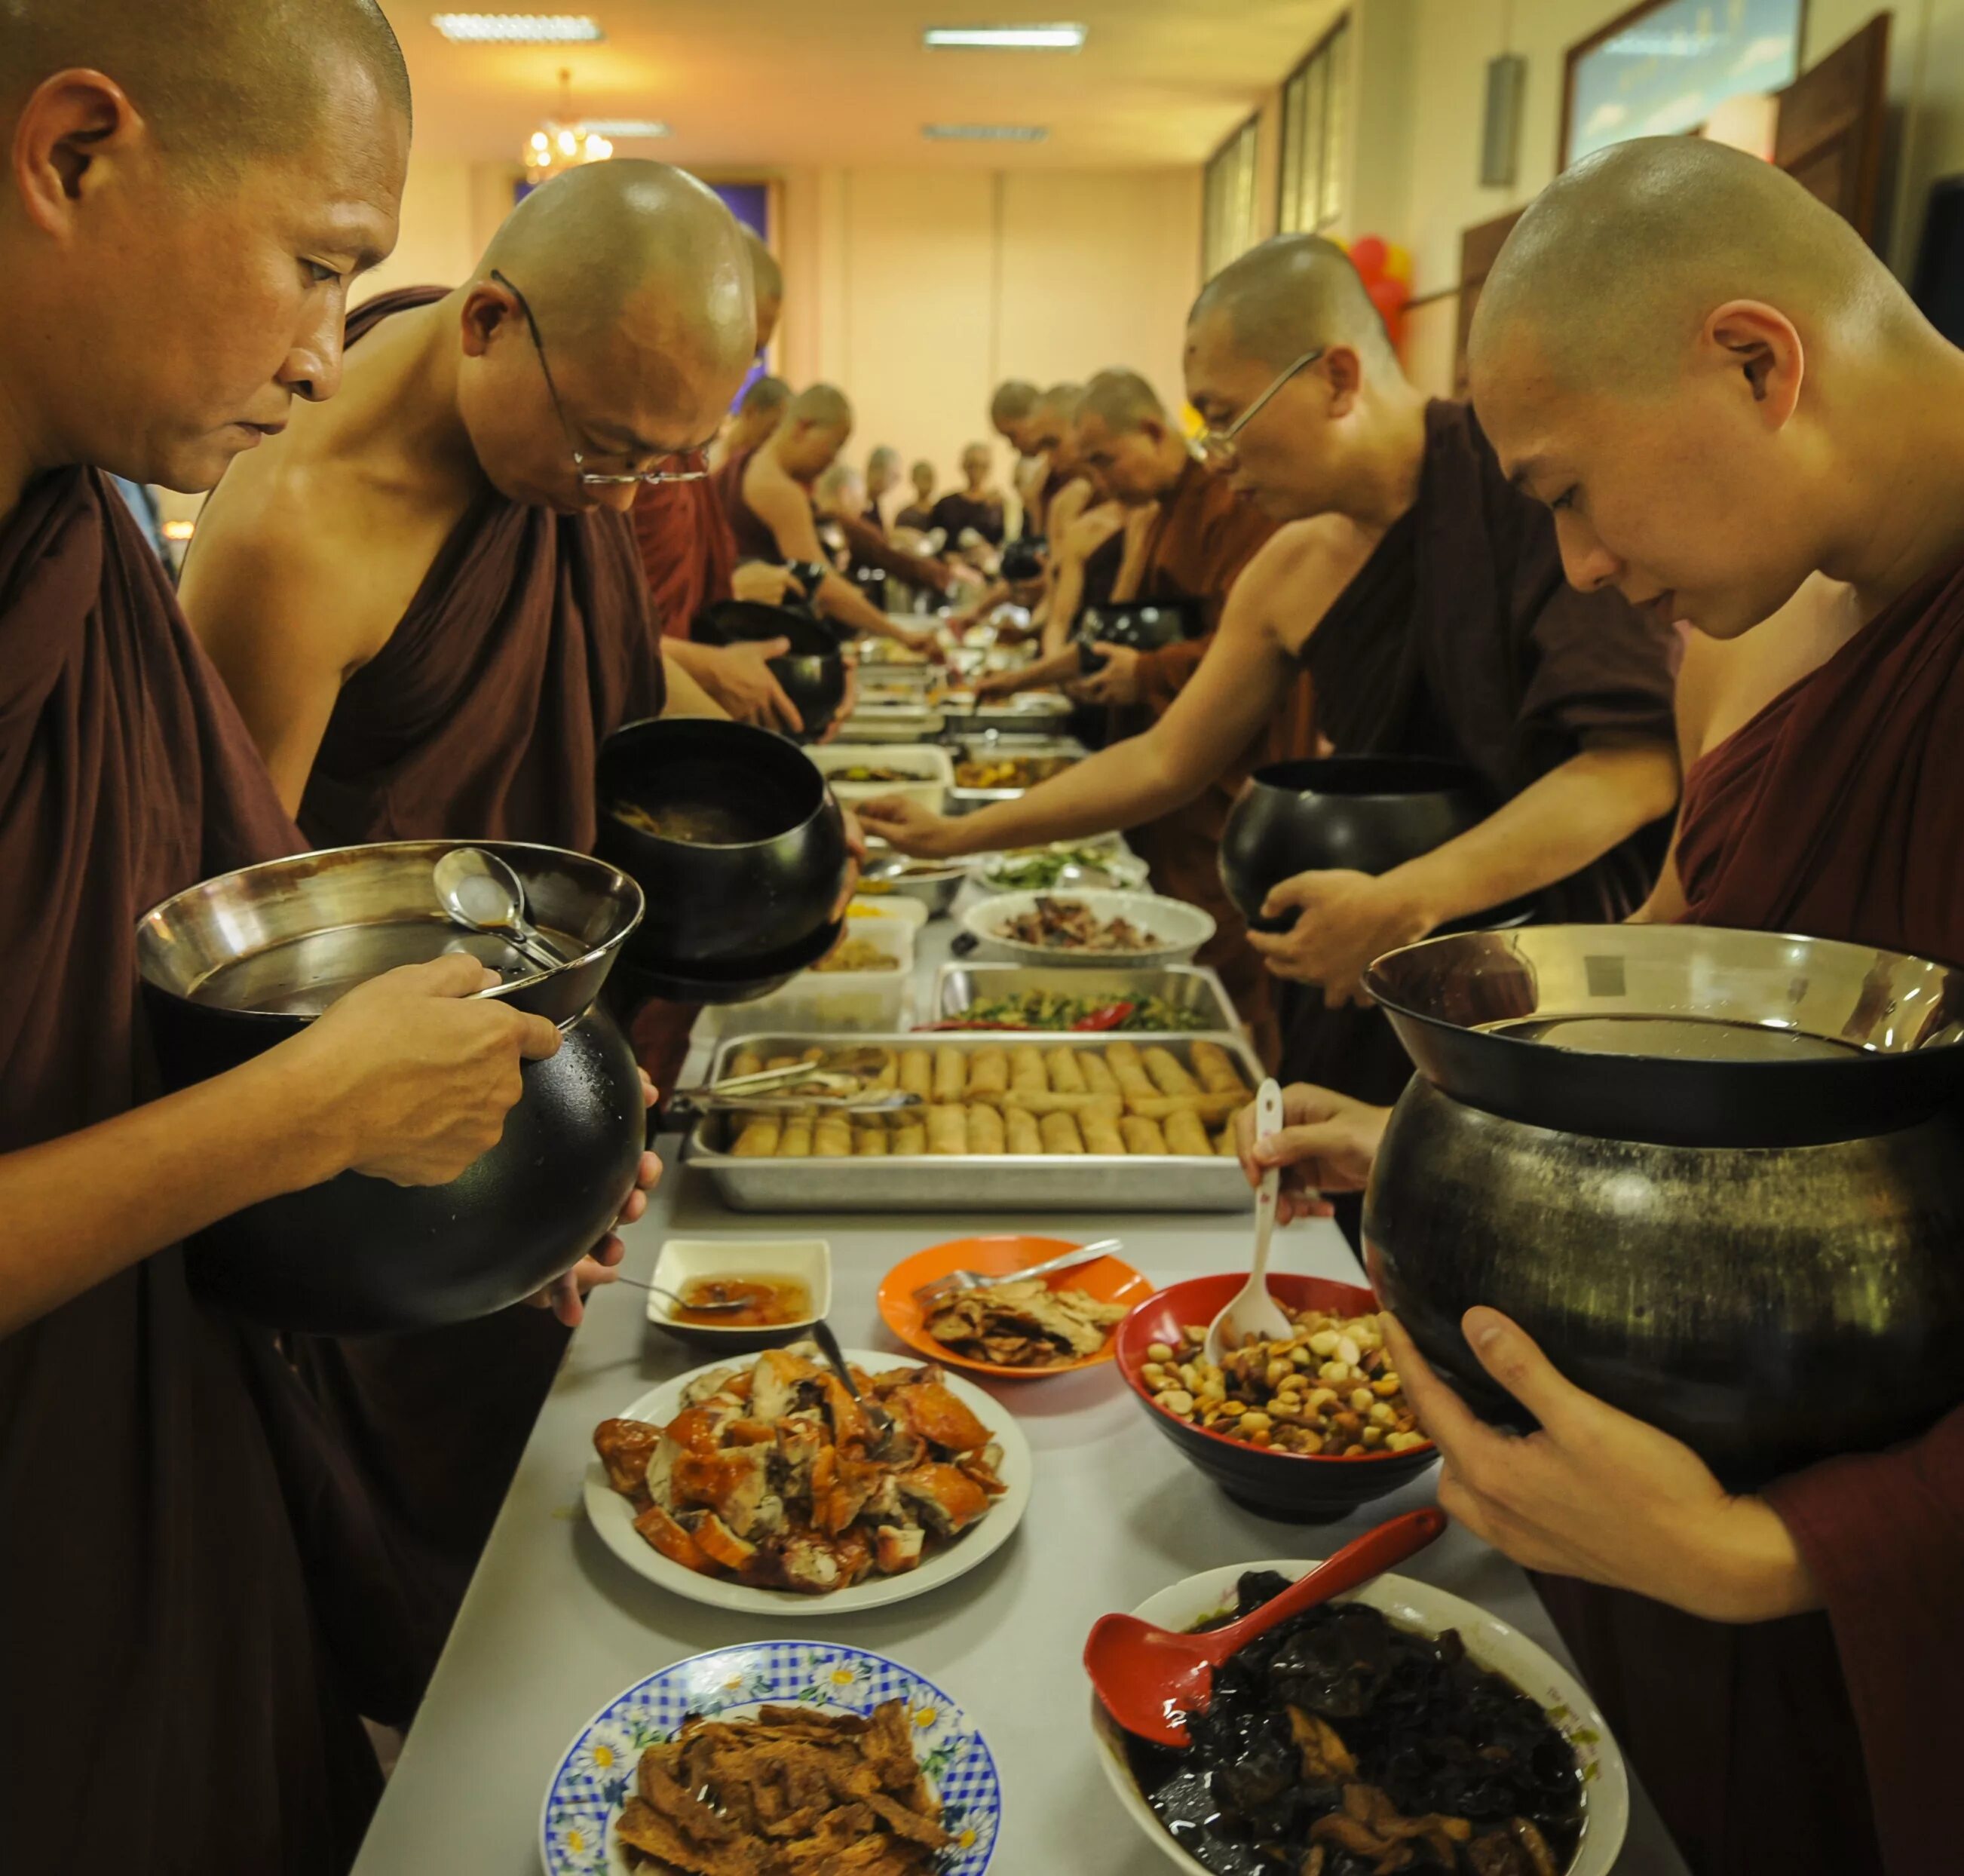 Еда монахов монастыря Шаолинь. Буддистские монахи в столовой. Монах Шаолинь Трапеза. Пища в монастыре. Монахи едят мясо